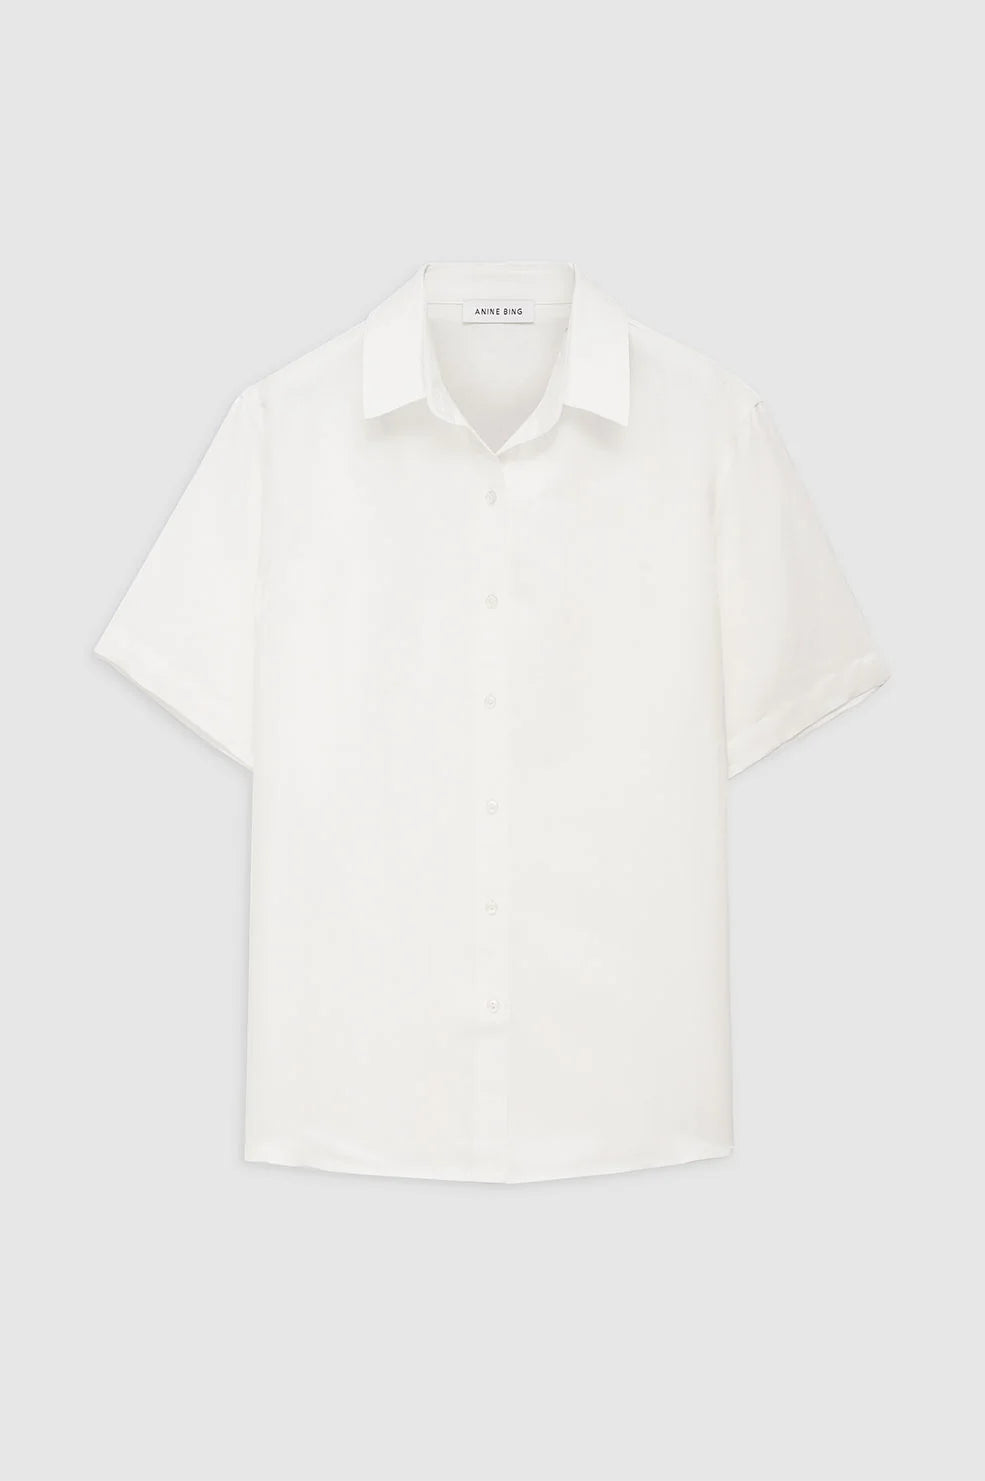 Bruni Shirt in White Linen Blend